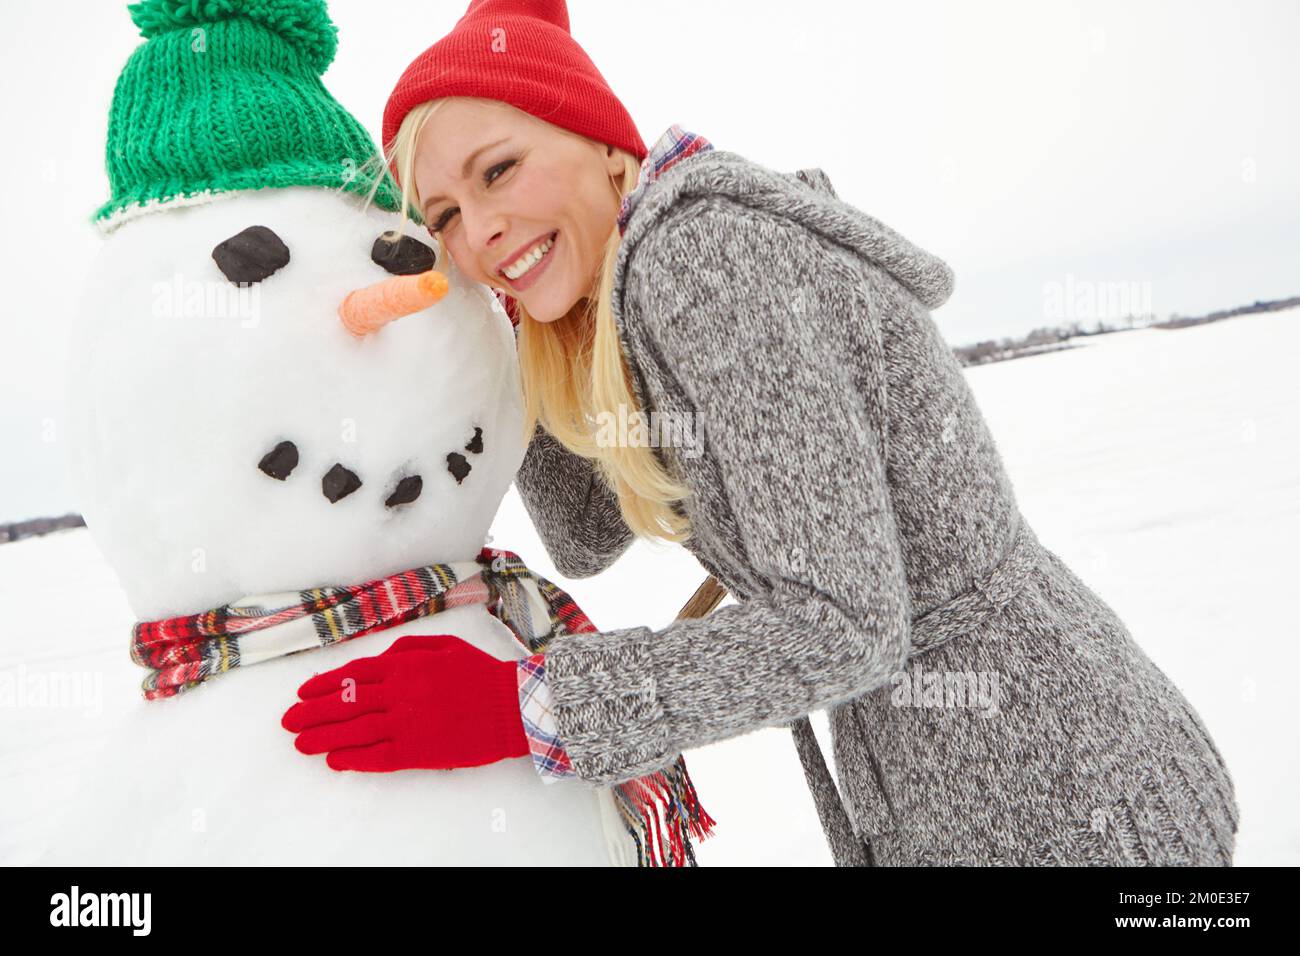 Snowman costruzione, donna e felice ritratto di una persona in vacanza invernale e vacanza per natale. Sorriso, felicità e divertimento nella sensazione di spettacolo Foto Stock